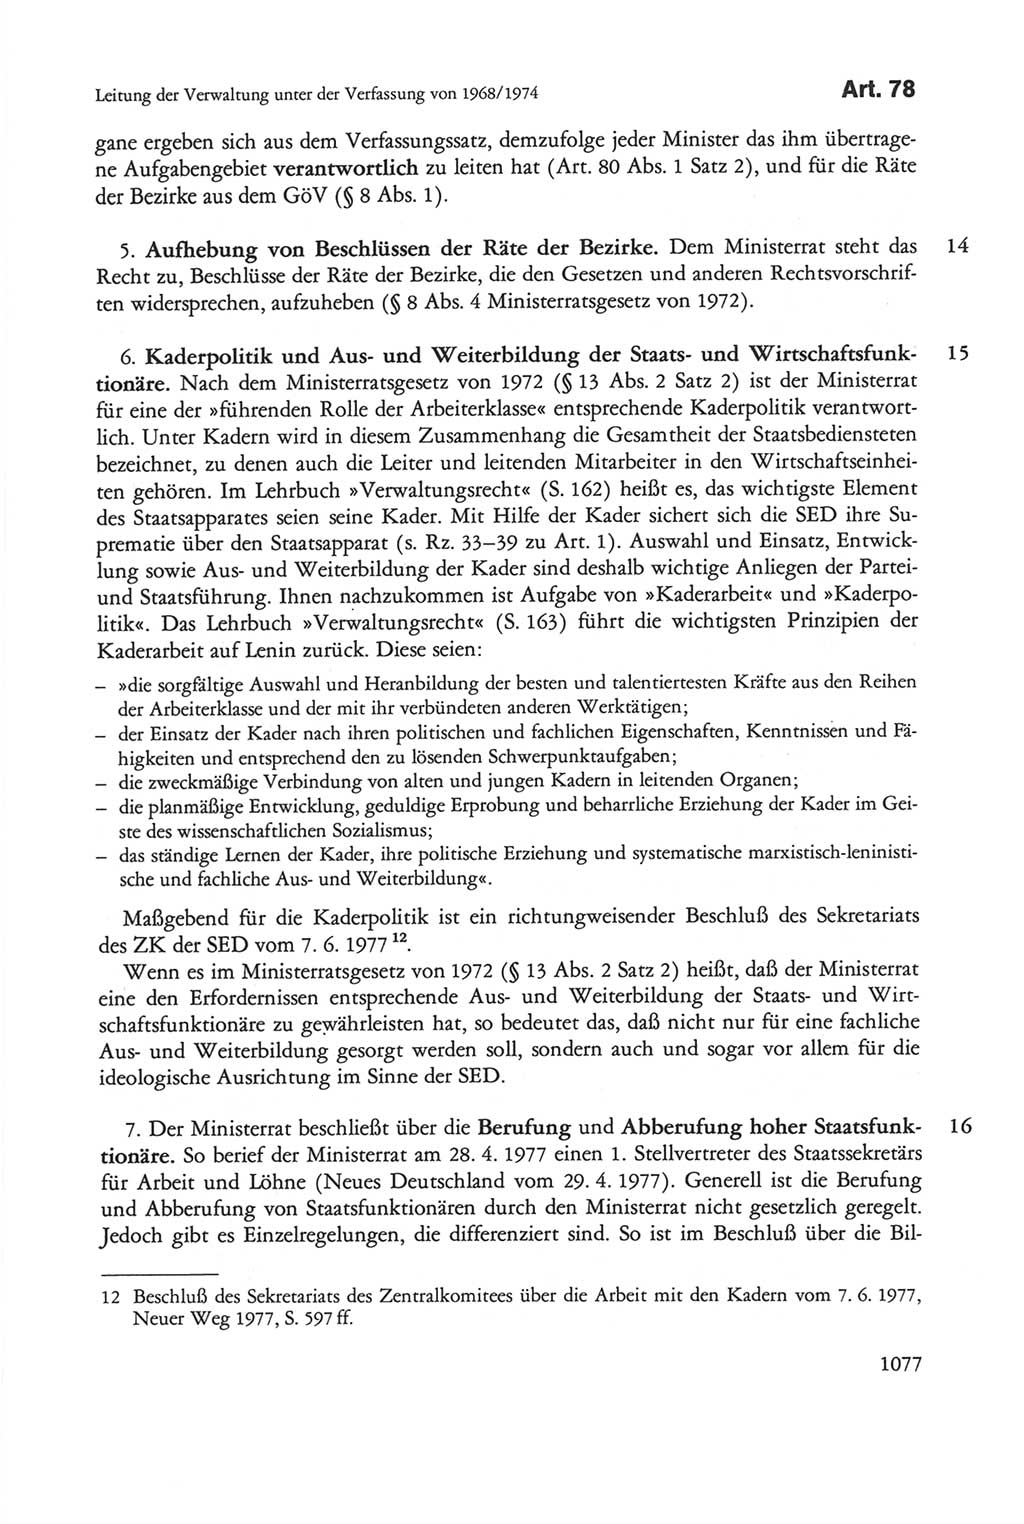 Die sozialistische Verfassung der Deutschen Demokratischen Republik (DDR), Kommentar mit einem Nachtrag 1997, Seite 1077 (Soz. Verf. DDR Komm. Nachtr. 1997, S. 1077)